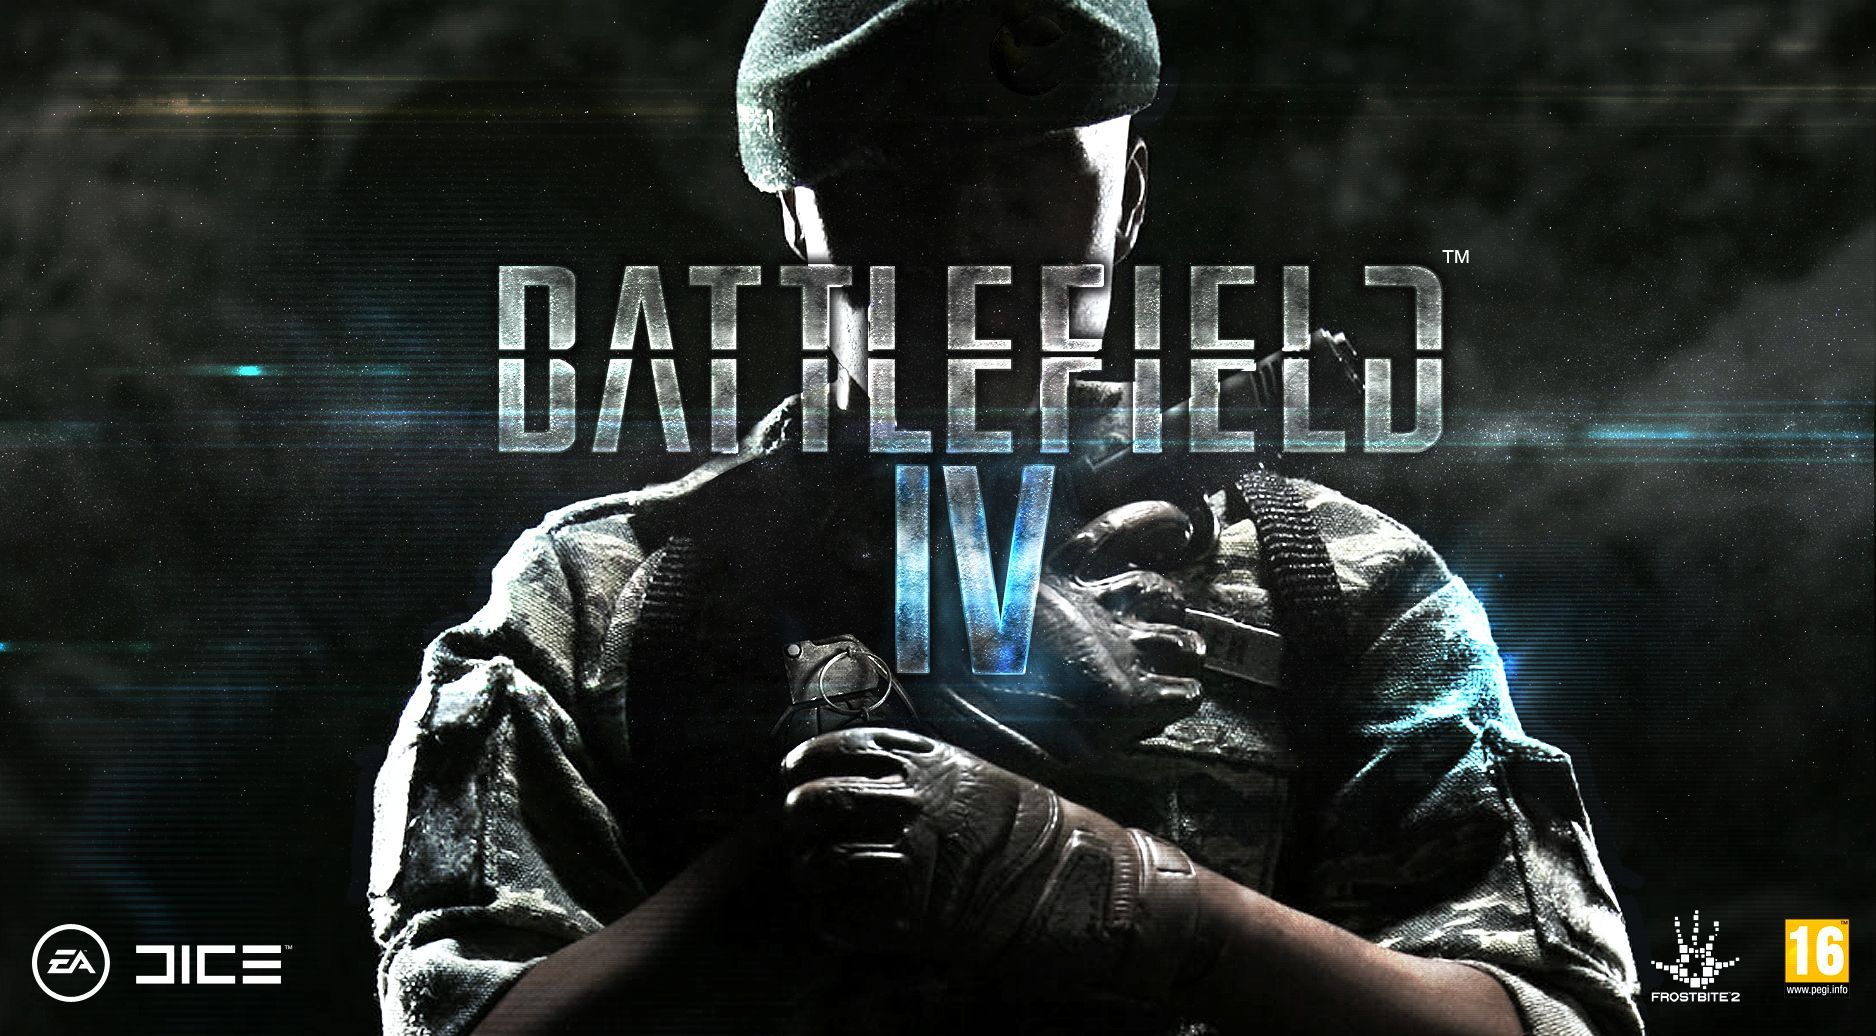 Battlefield 4 HD Wallpapers